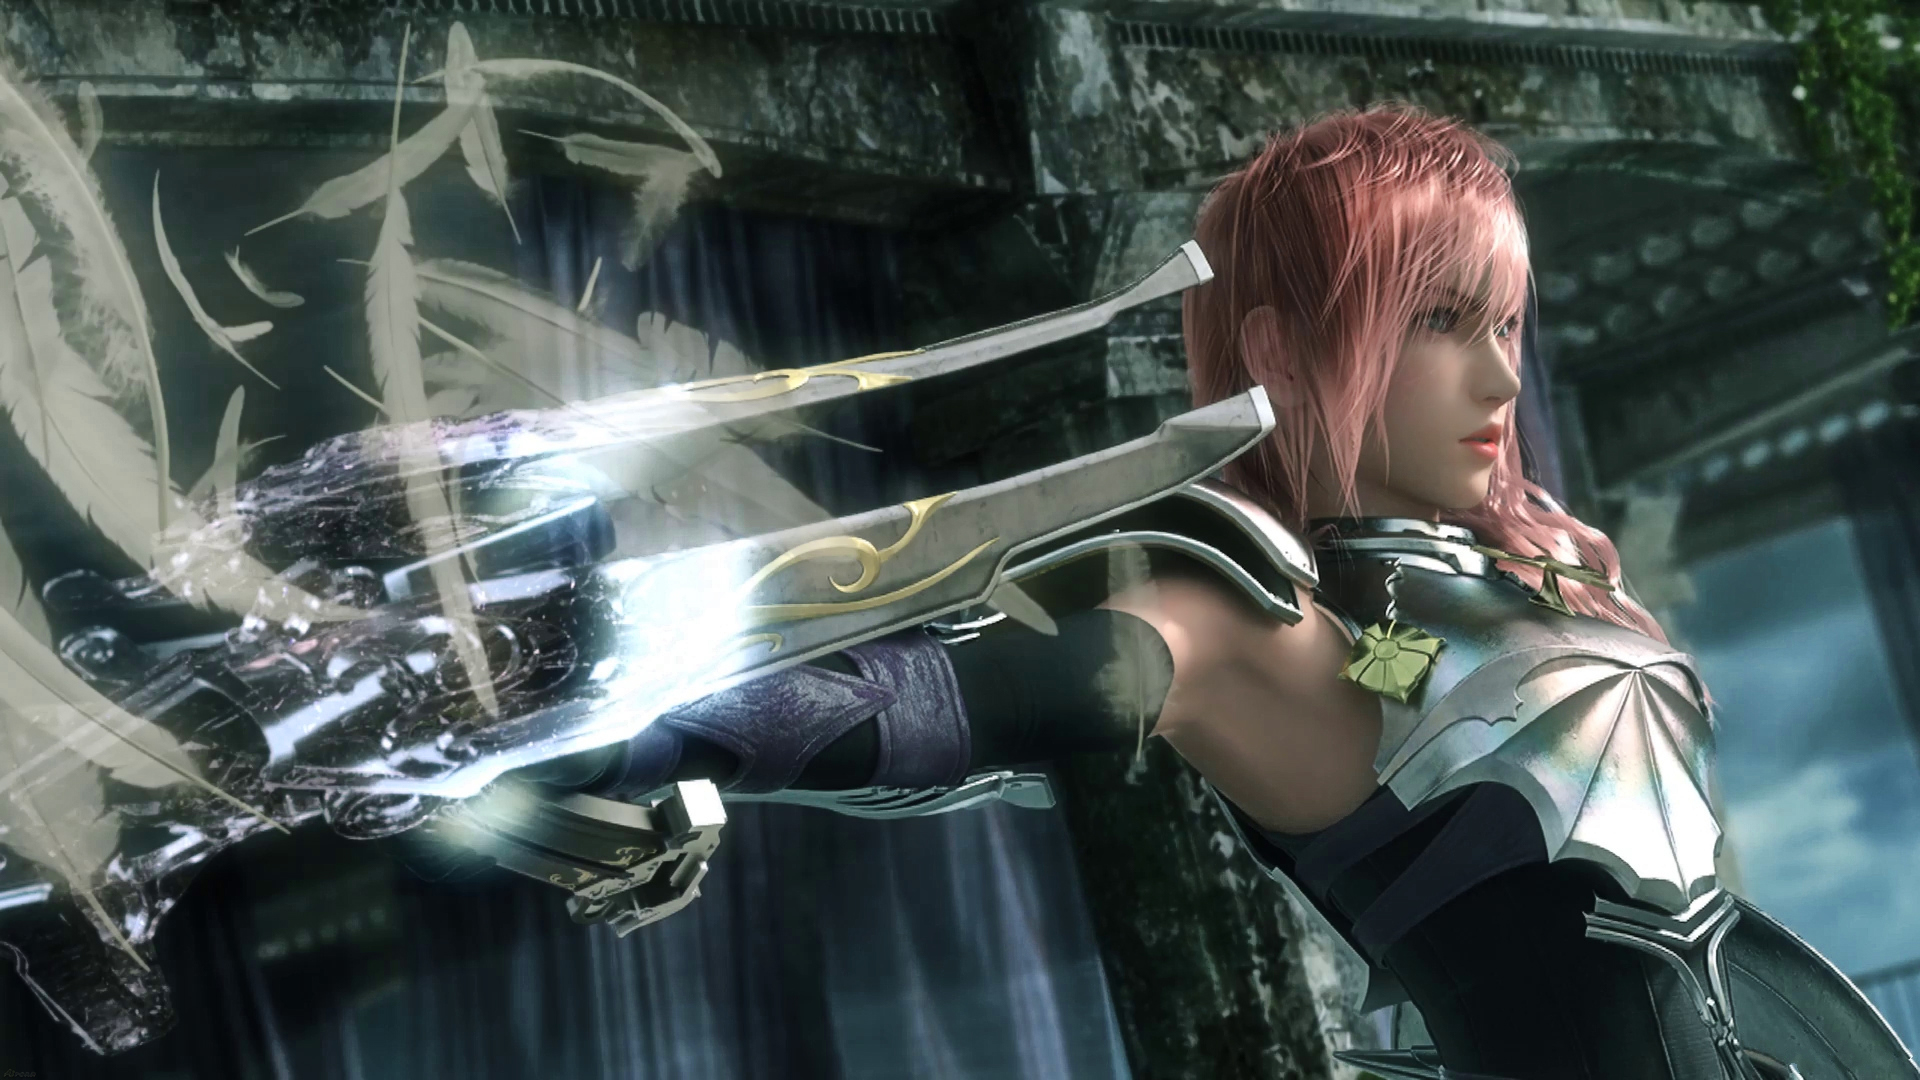 Lightning Final Fantasy Fight - HD Wallpaper 